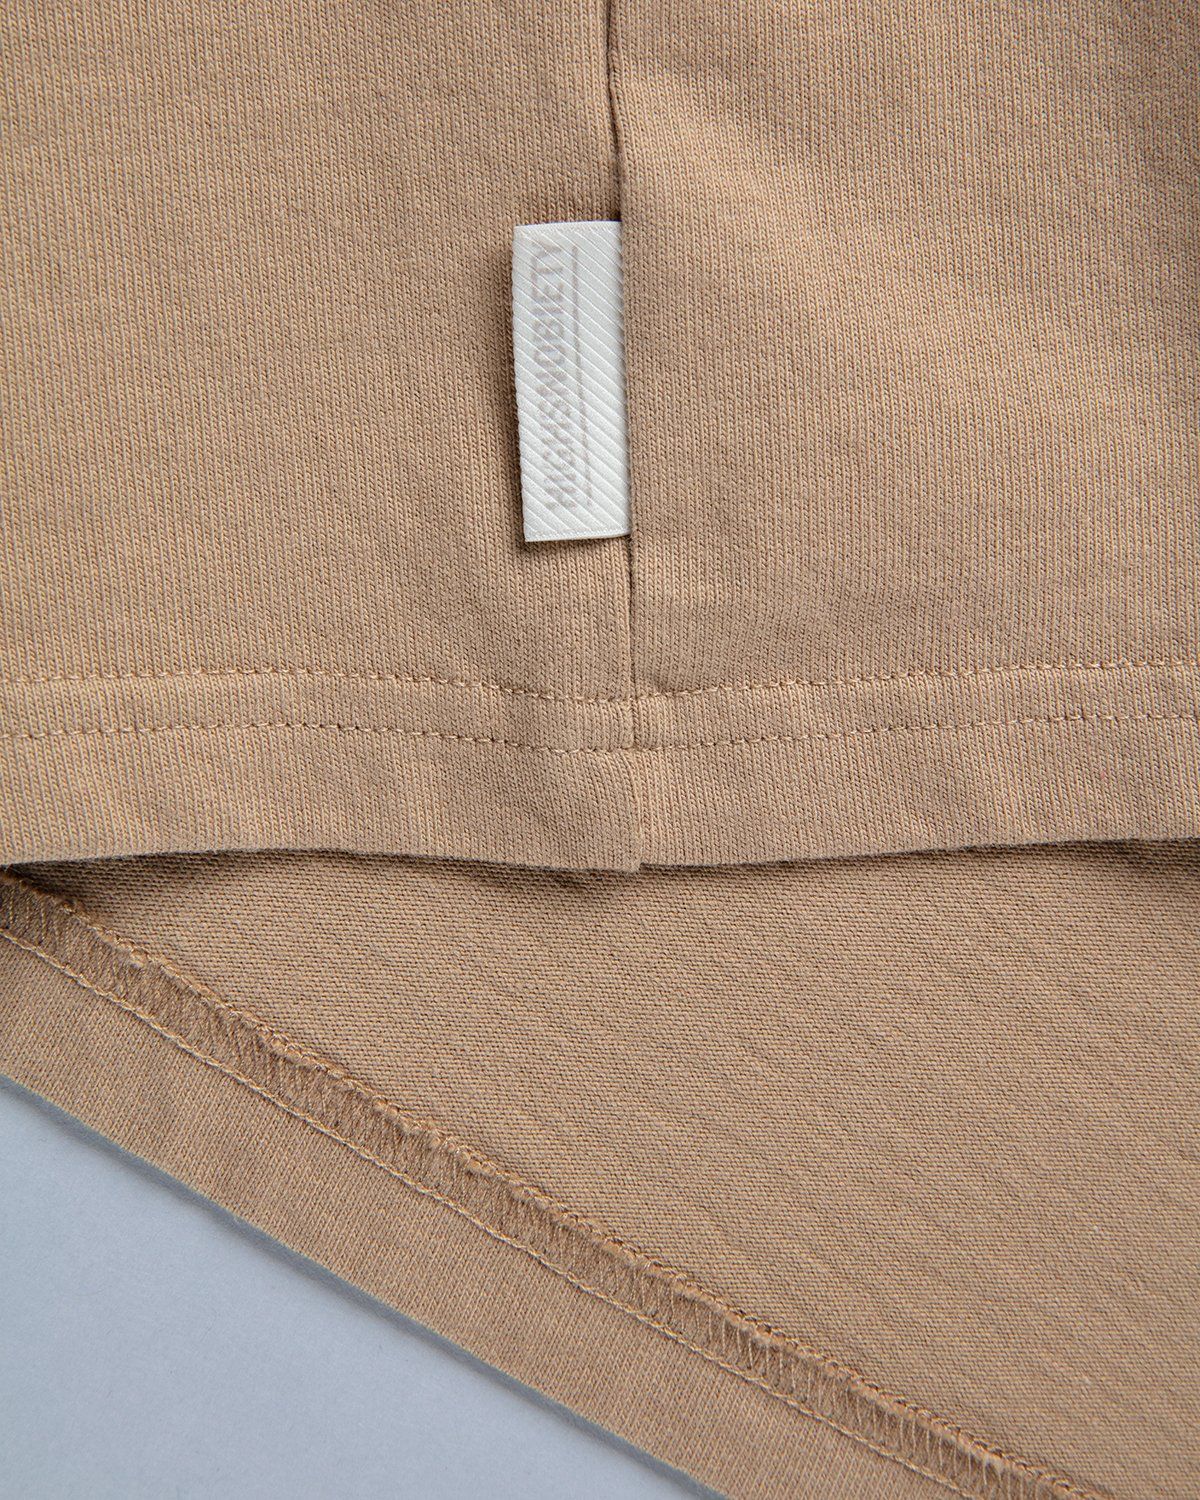 Highsnobiety – T-Shirt Cork - Tops - Beige - Image 4